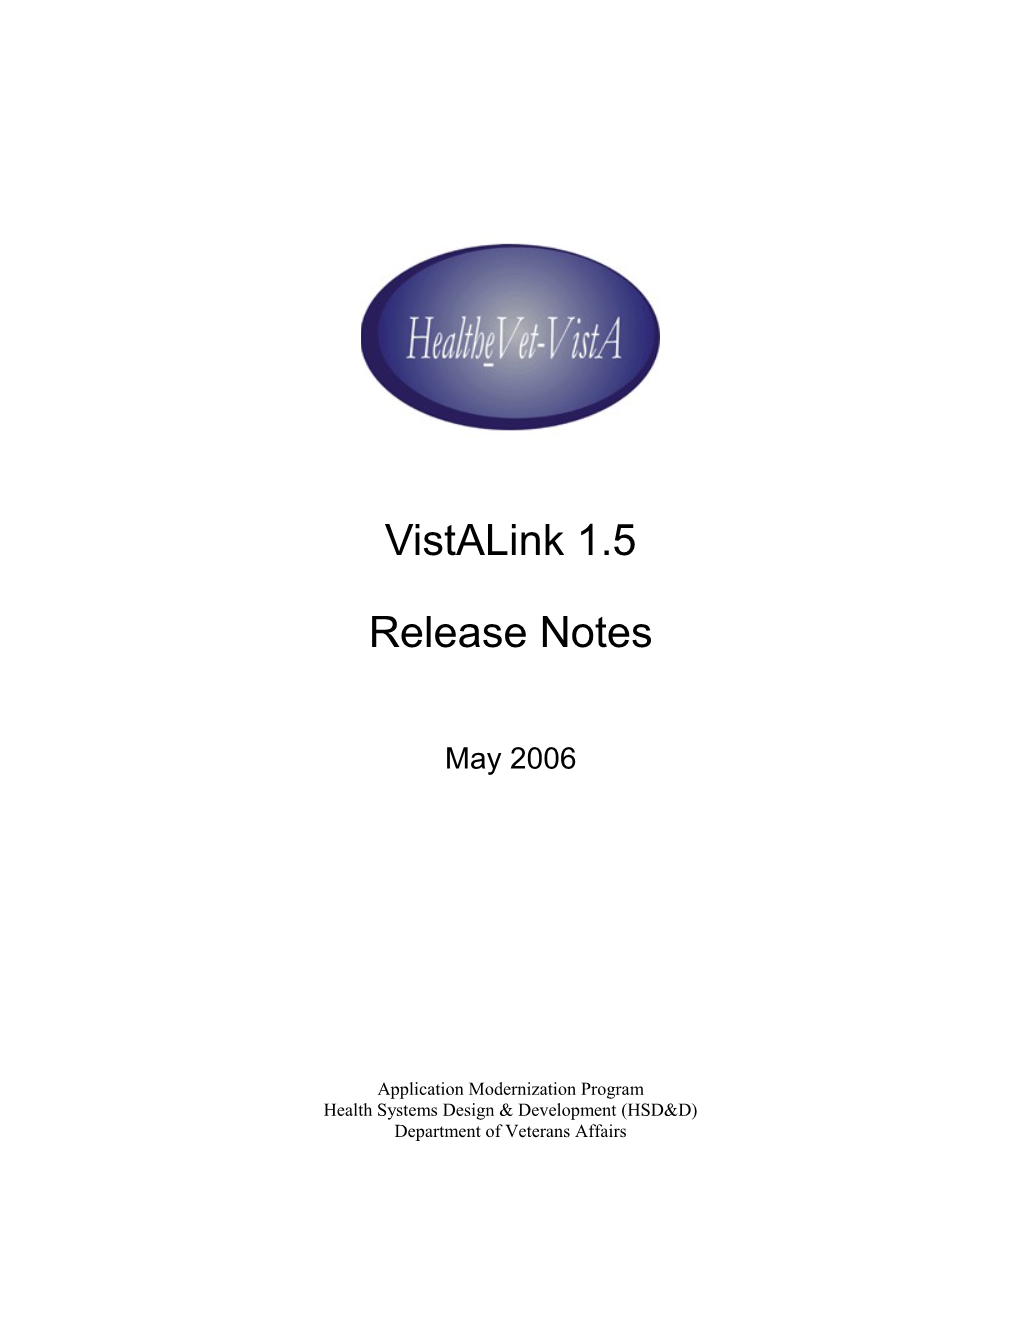 Vistalink 1.5 Release Notes